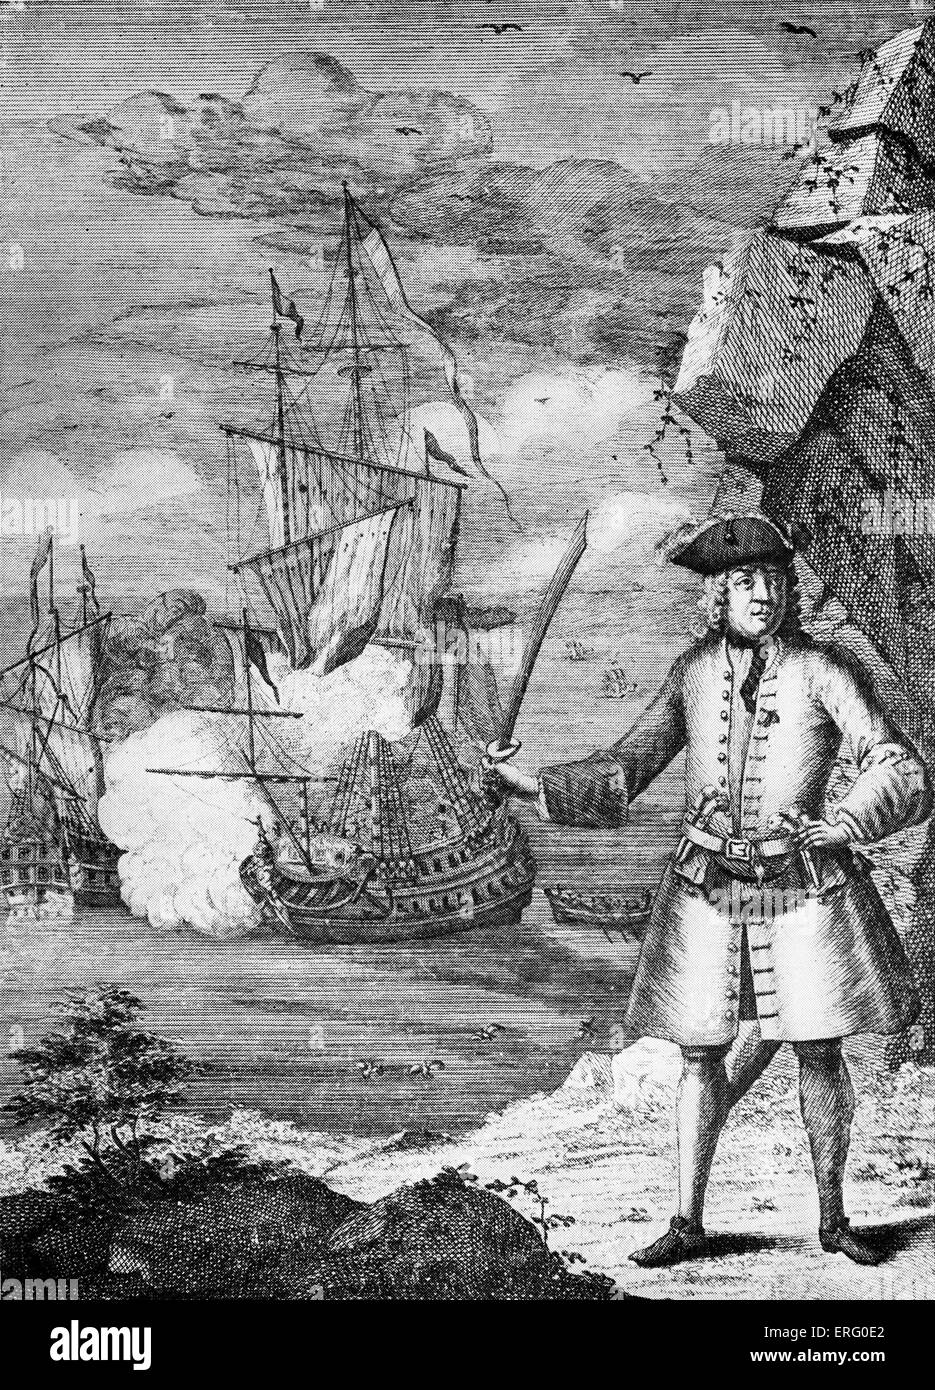 Le capitaine John Avery, la gravure. Sous-titre suivant "Capitaine John  Avery en tenant le grand Mogul 's ship'. Le pirate, John Avery et son  équipage, capturé l'empereur moghol Aurangzeb, le plus gros